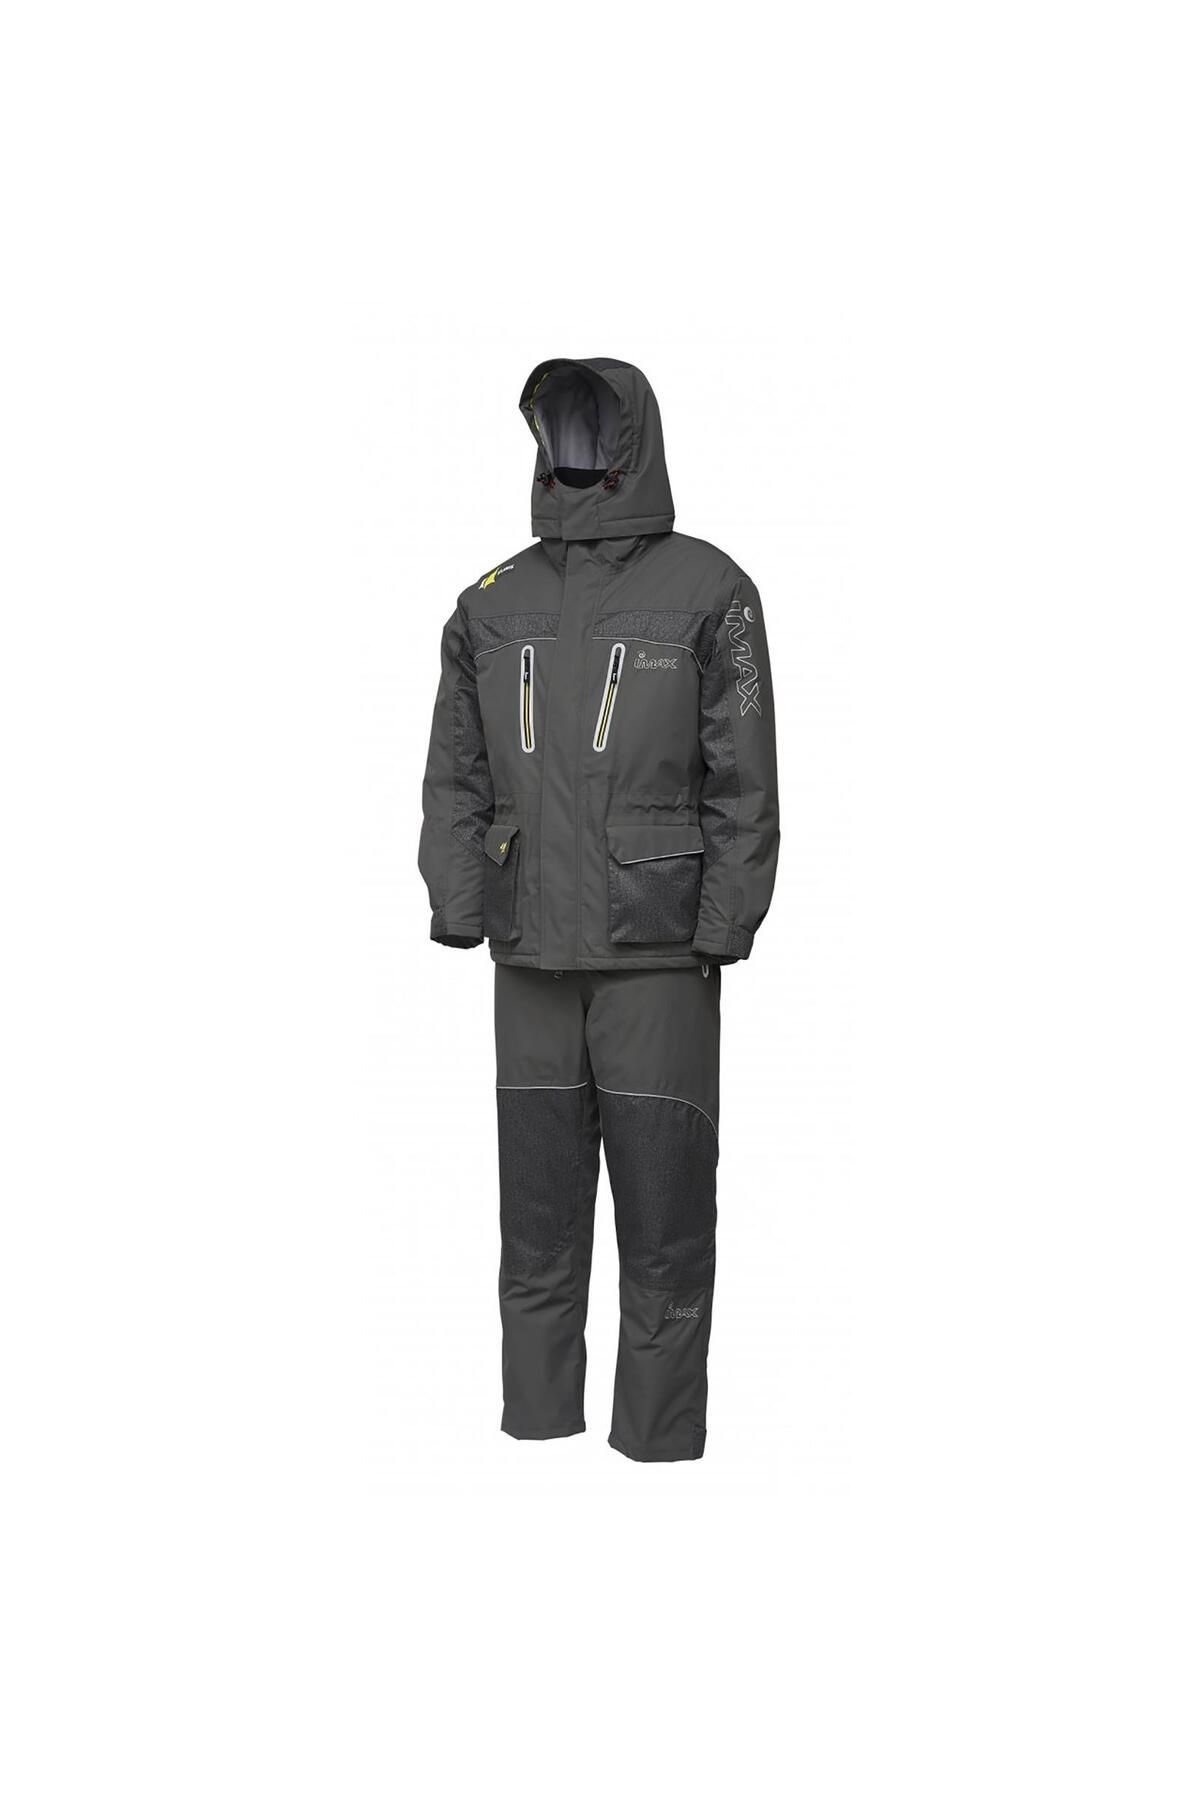 imax Atlantic Challenge -40 Thermo Suit Grey Balıkçı Kıyafeti